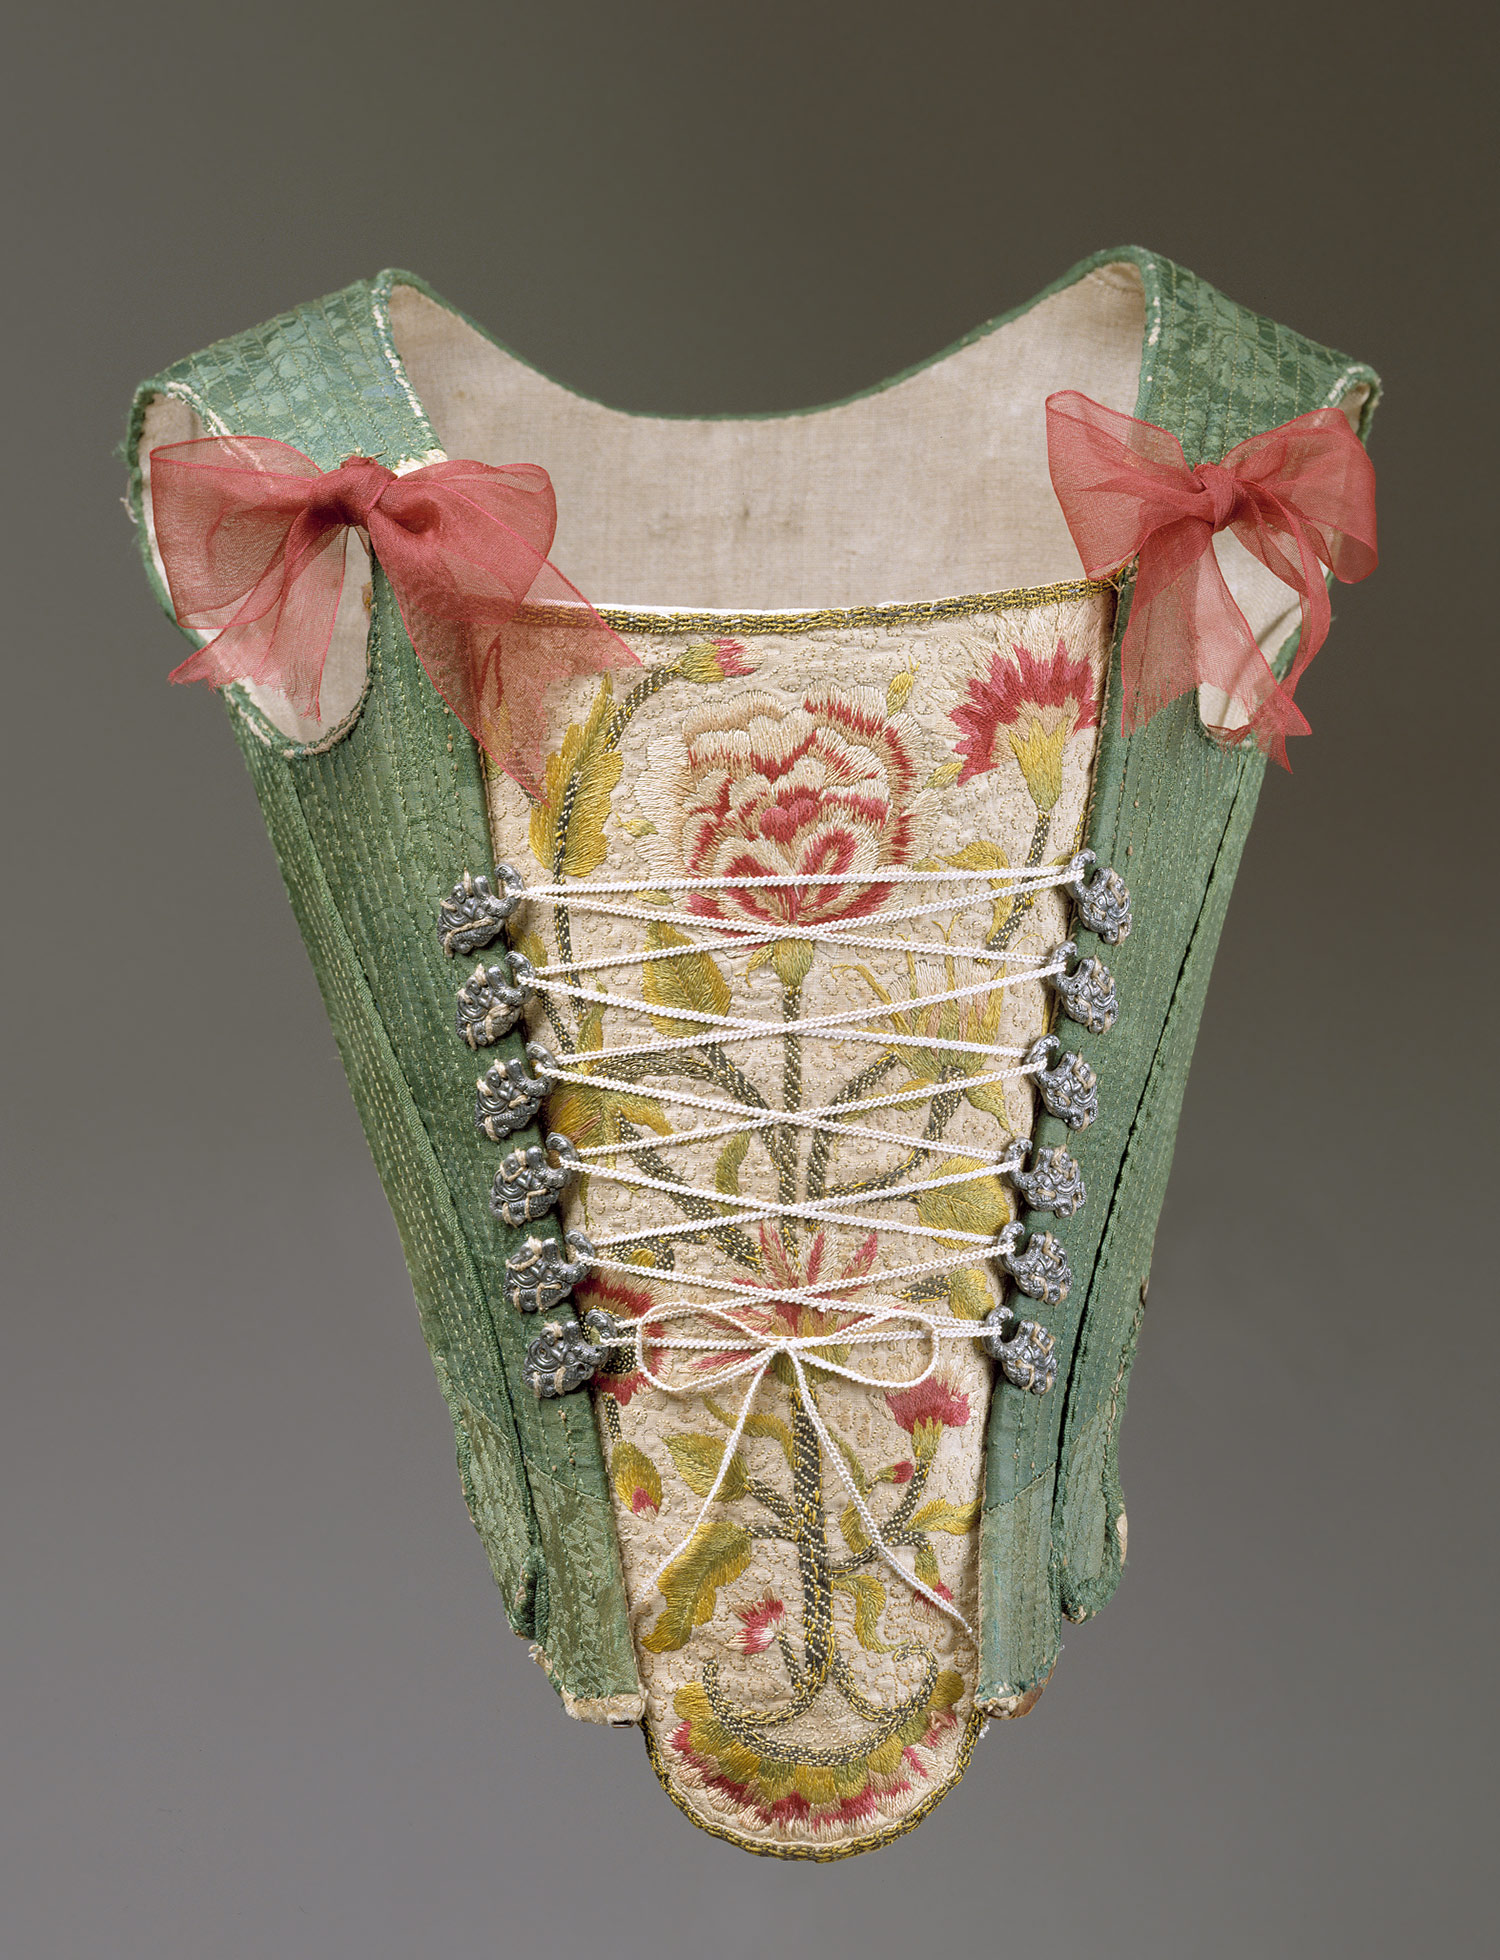  Dress Shoppe on Eighteenth Century European Dress   Thematic Essay   Heilbrunn